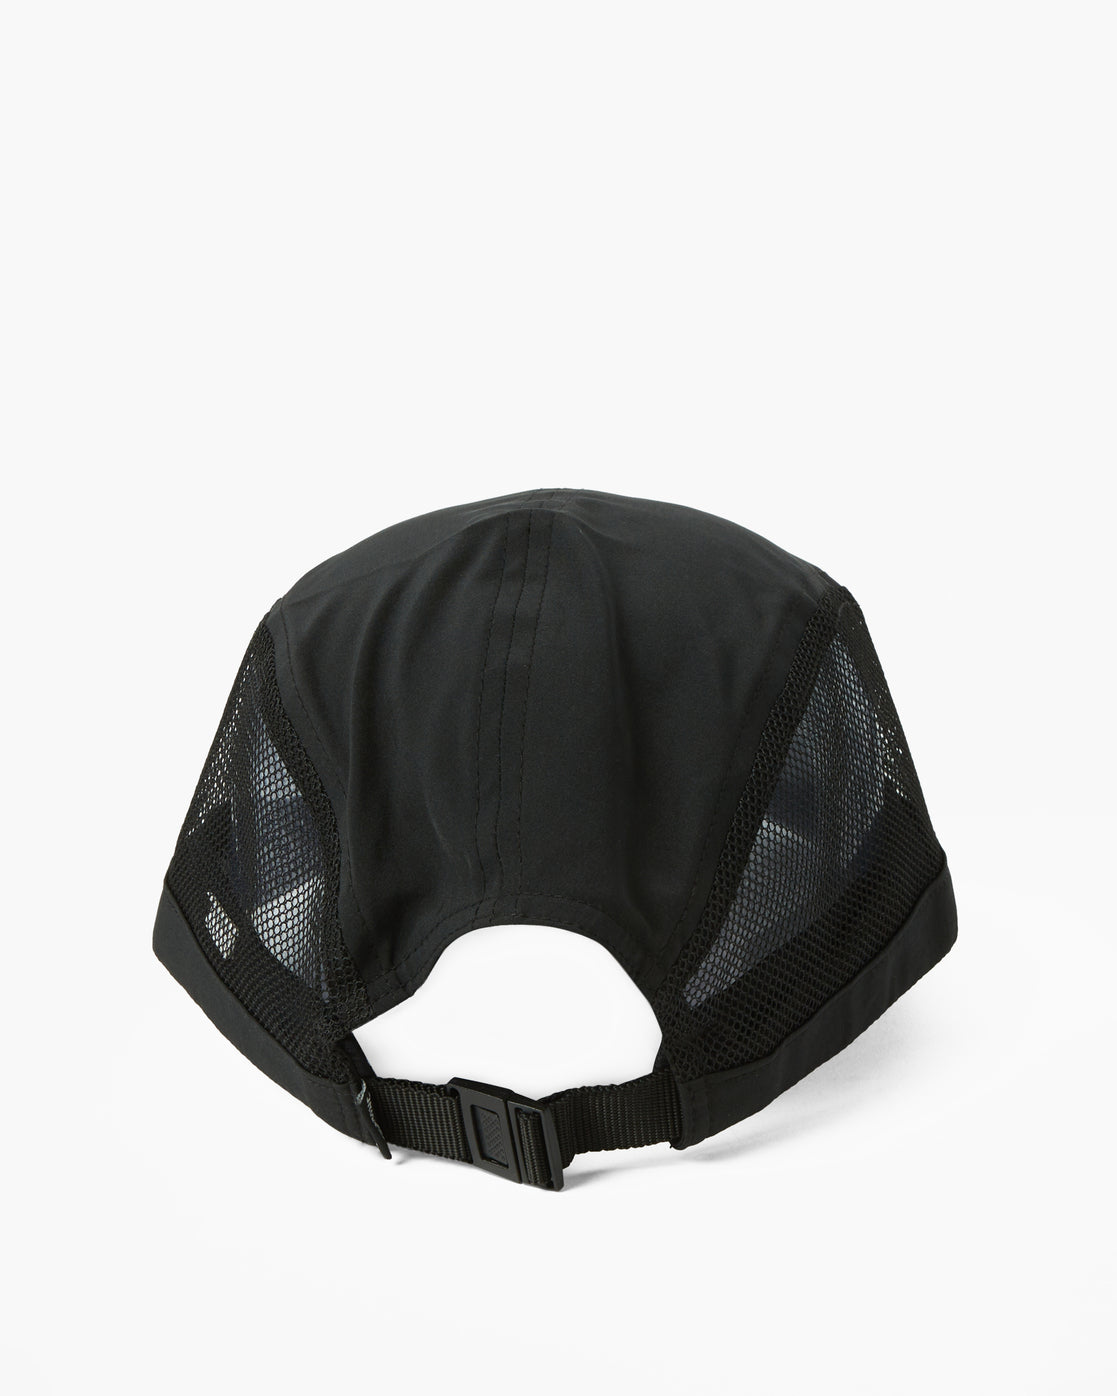 Grey / Black Mesh Logo Hat - Big Joshy Swimbaits